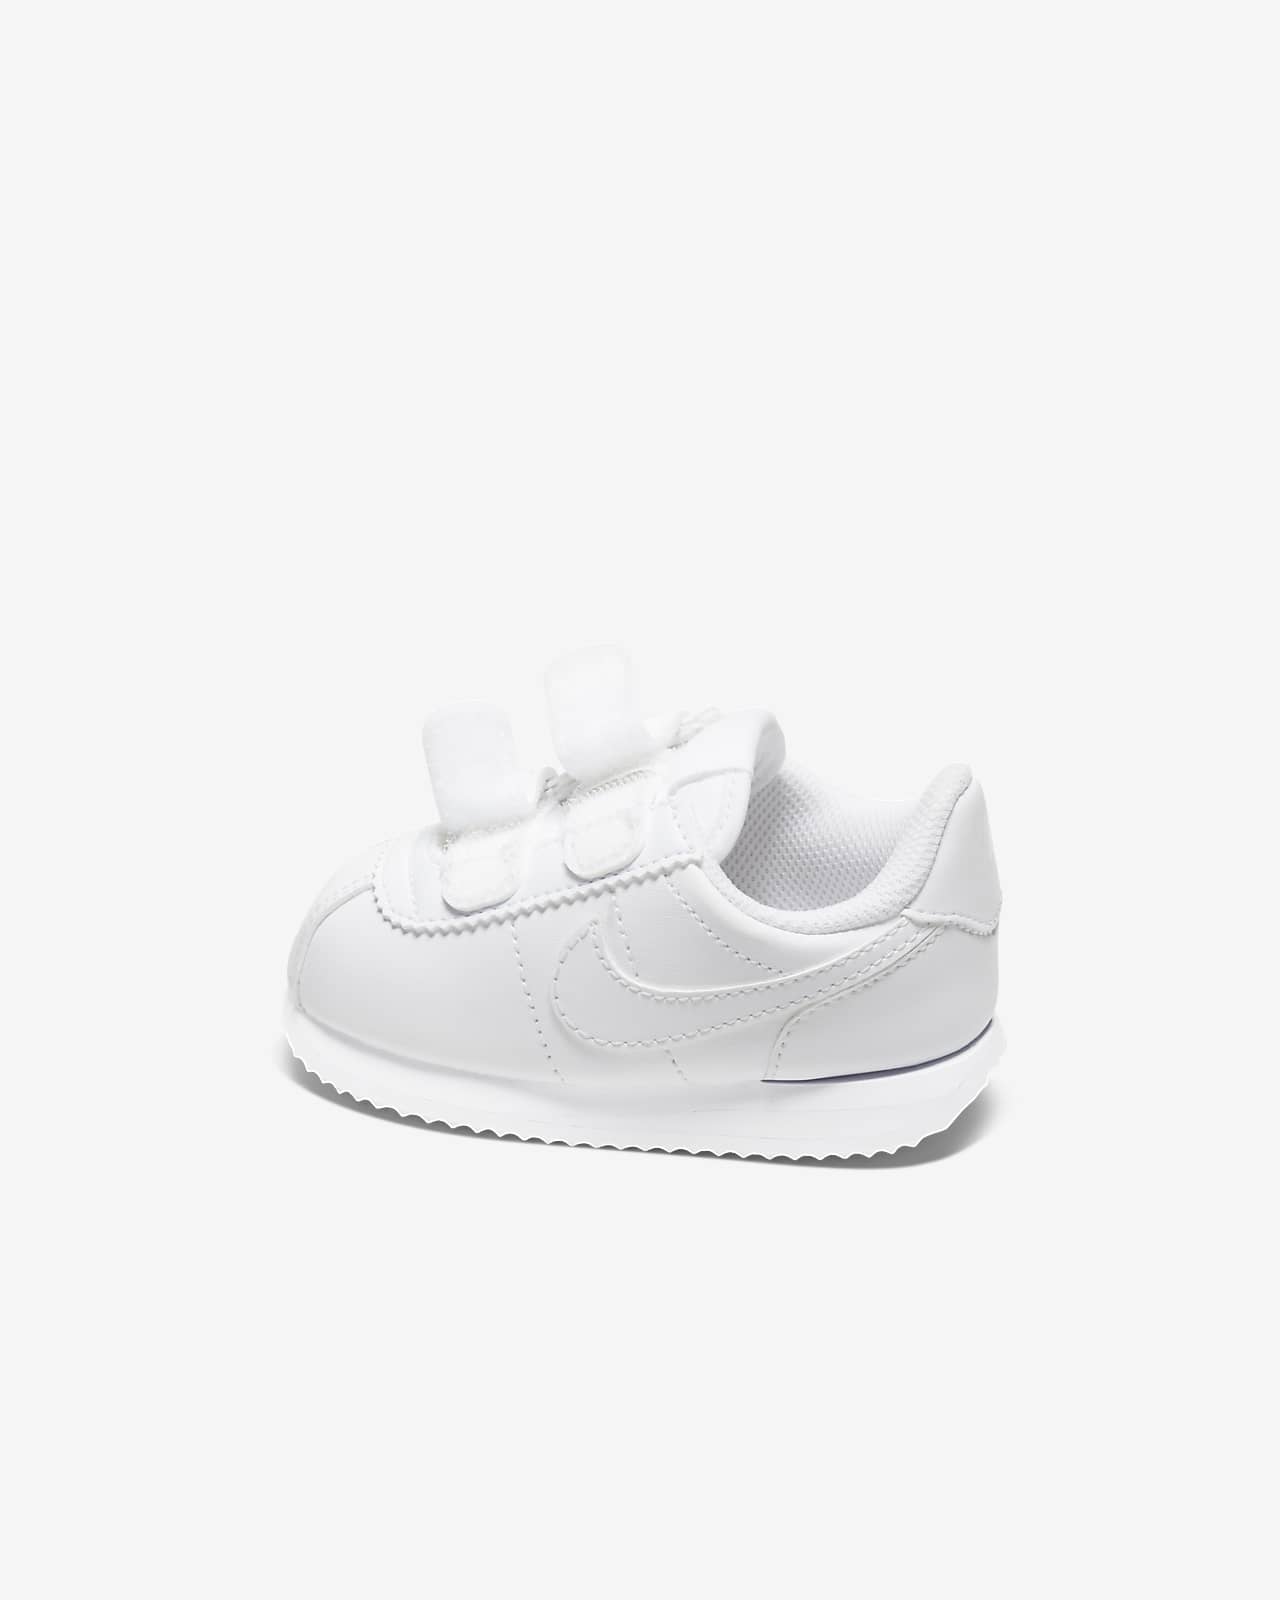 Nike Cortez Basic Baby/Toddler Shoe 